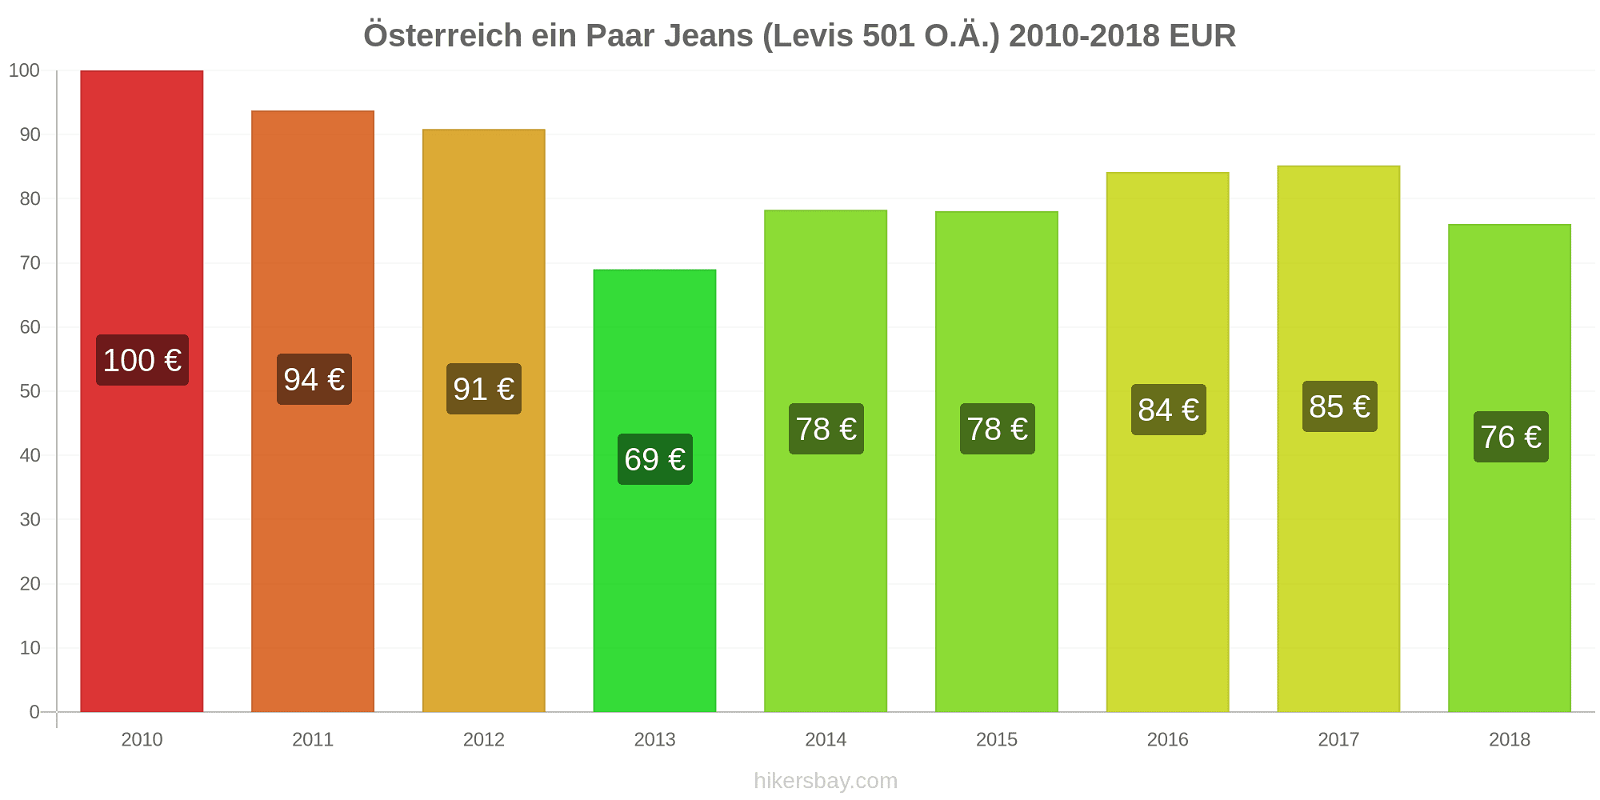 Österreich Preisänderungen 1 Paar Jeans (Levis 501 oder ähnlich) hikersbay.com